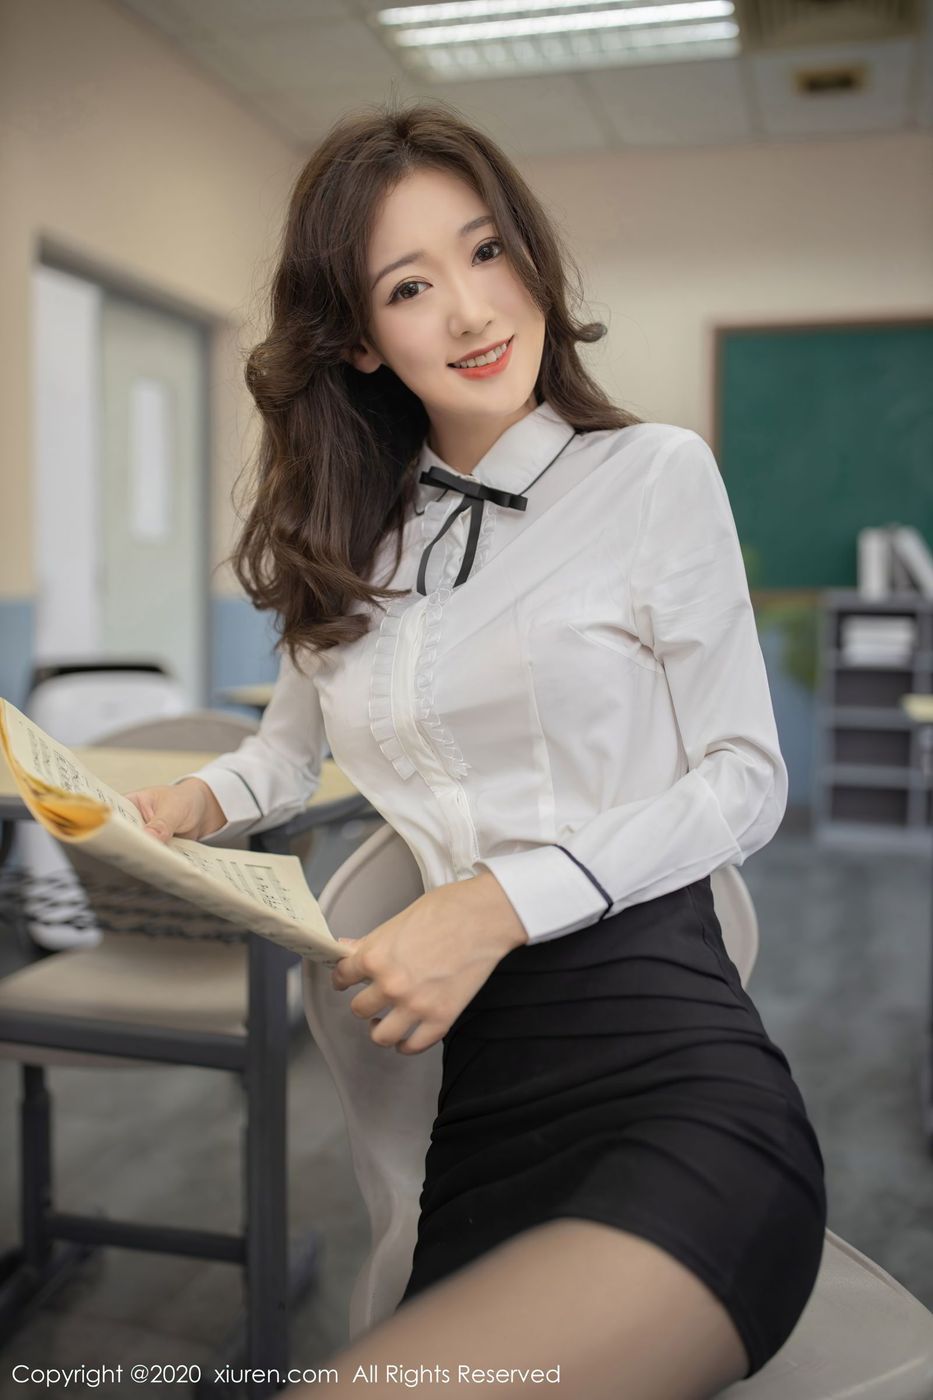 新人模特唐安琪黑丝美腿职场OL唱诗班老师系列写真